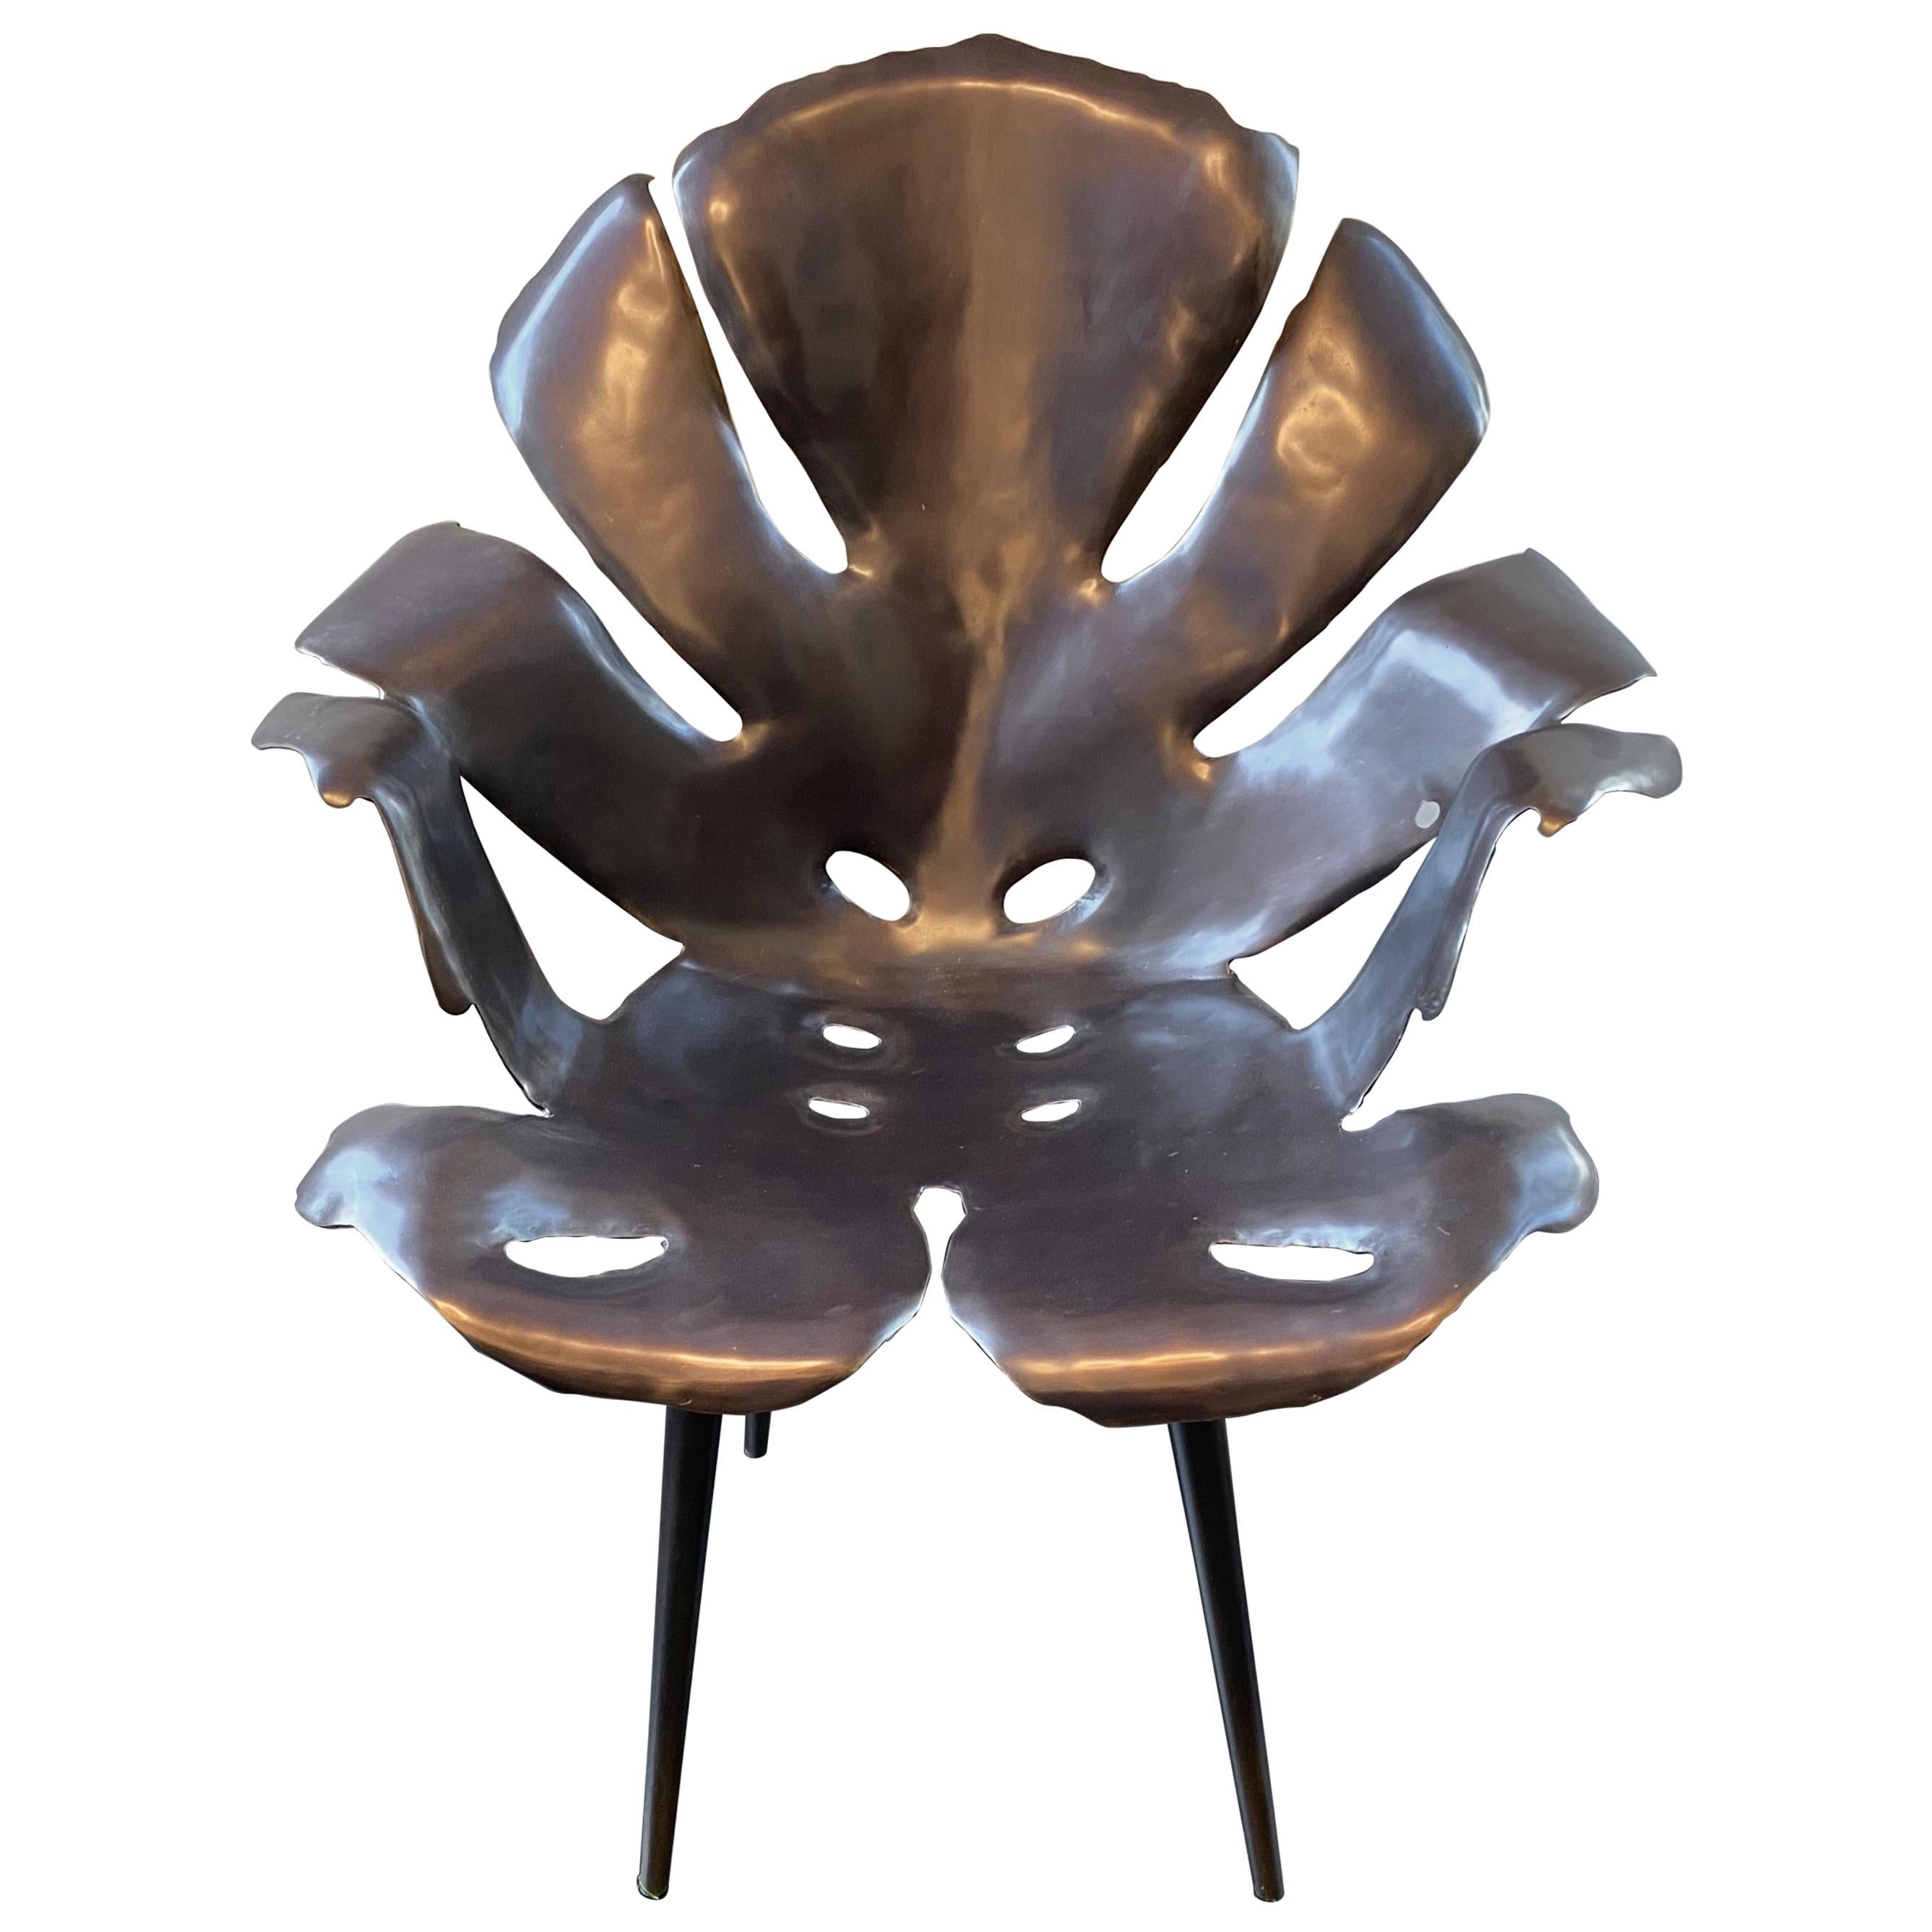 Der Philodendron-Esszimmerstuhl wurde von Hand geformt; stellen Sie sicher, dass er ebenso bequem wie wunderschön ist! Jeder Stuhl wiegt etwa 40 Pfund und eignet sich daher gut für den Einsatz im Freien, auch bei böigem Wind, oder in Innenräumen -